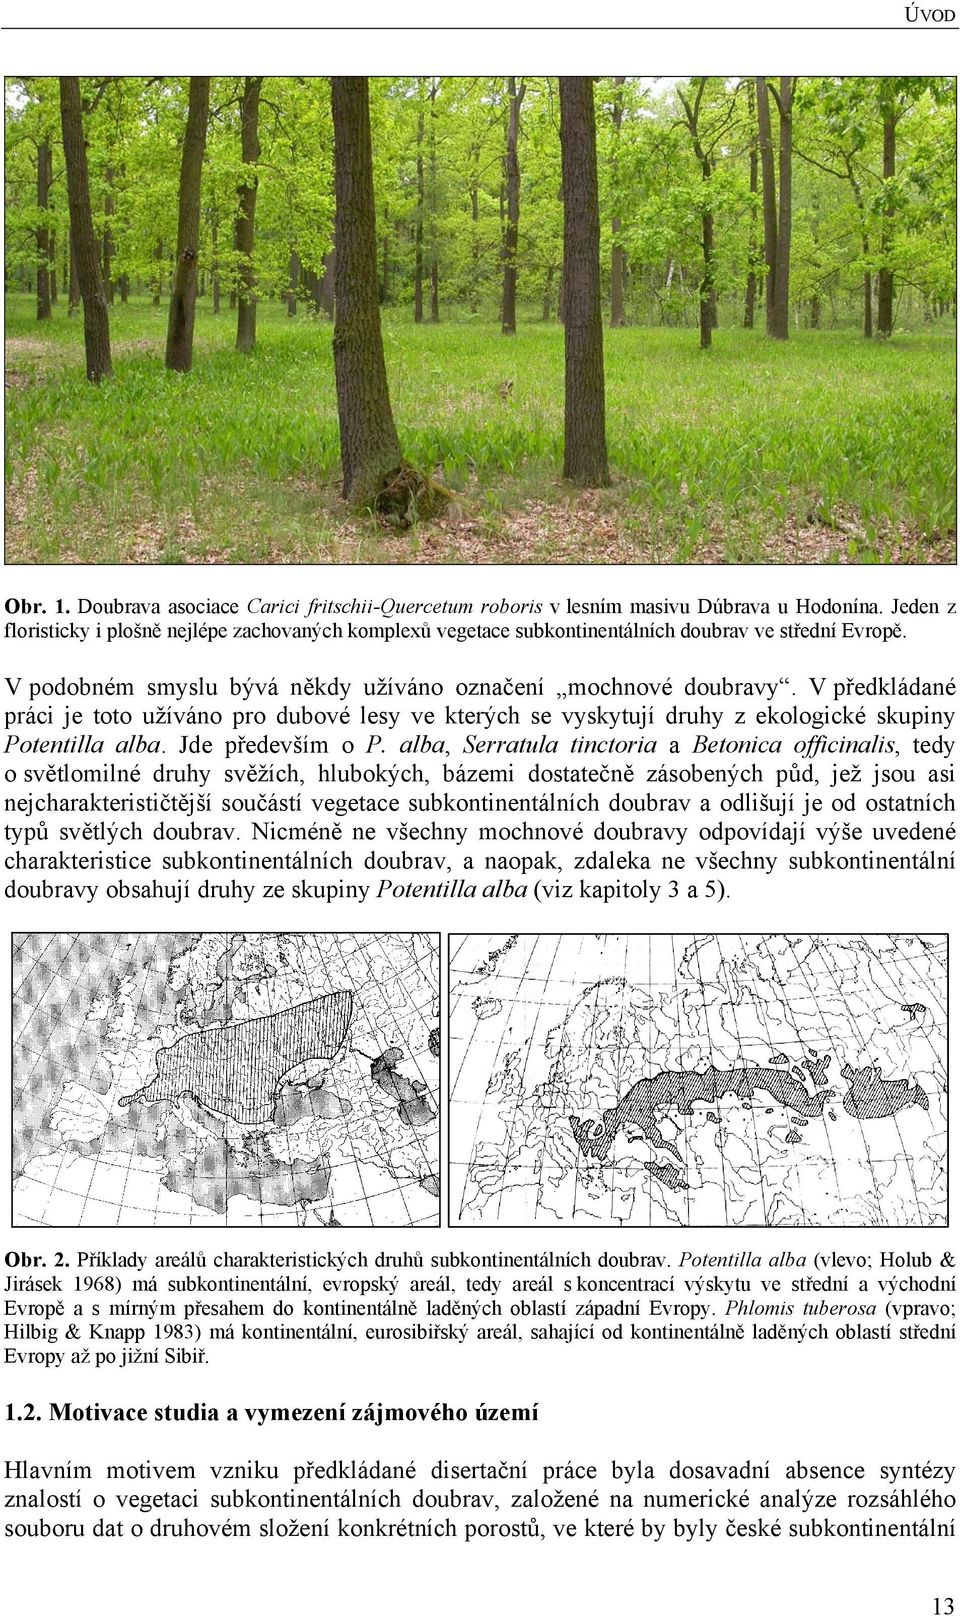 V předkládané práci je toto užíváno pro dubové lesy ve kterých se vyskytují druhy z ekologické skupiny Potentilla alba. Jde především o P.